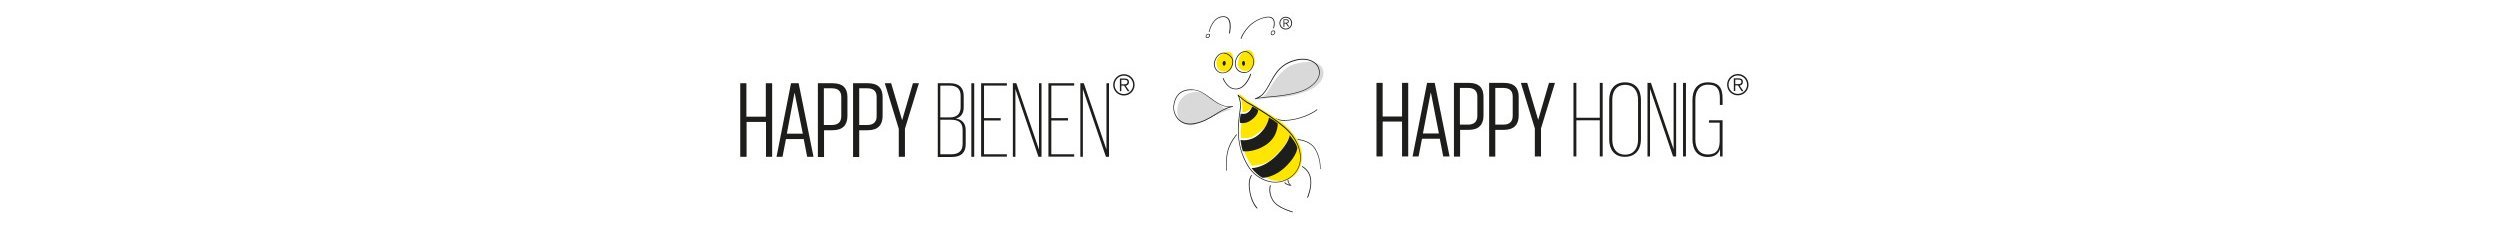 Happy Bienen